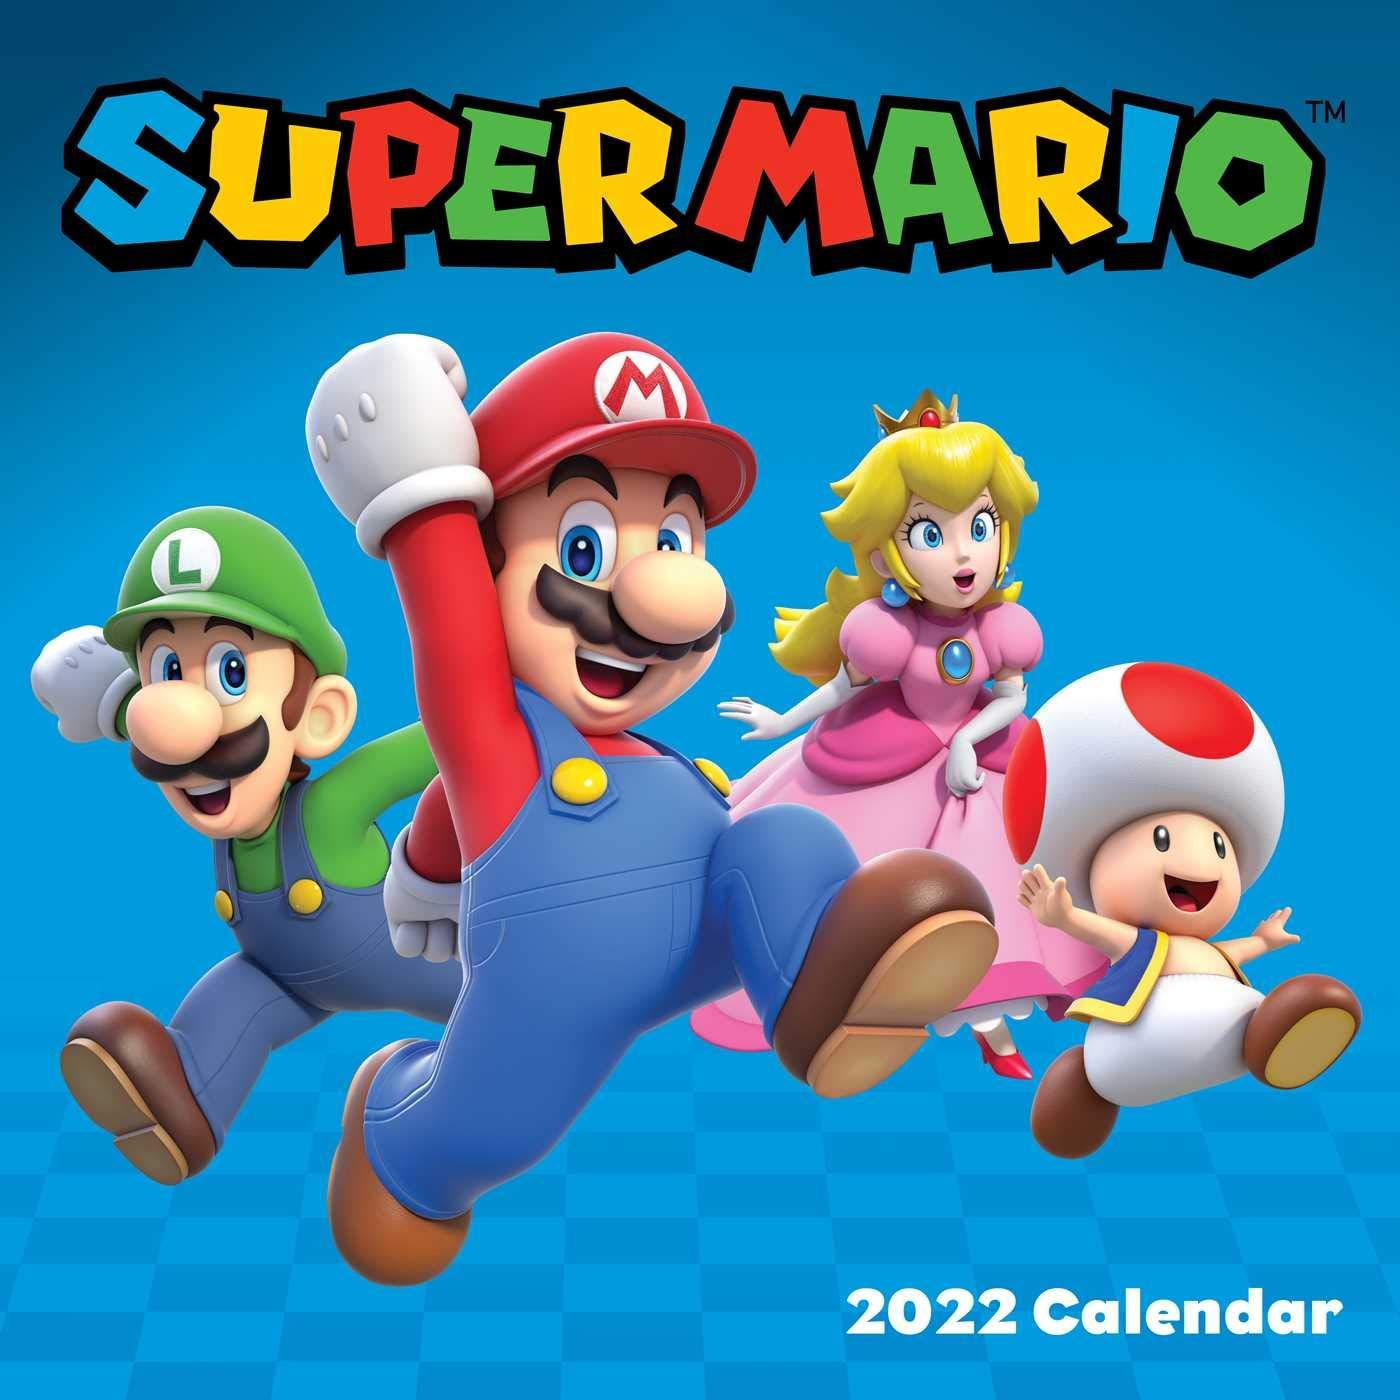 Super Mario 2022 Wall Calendar for $7.49